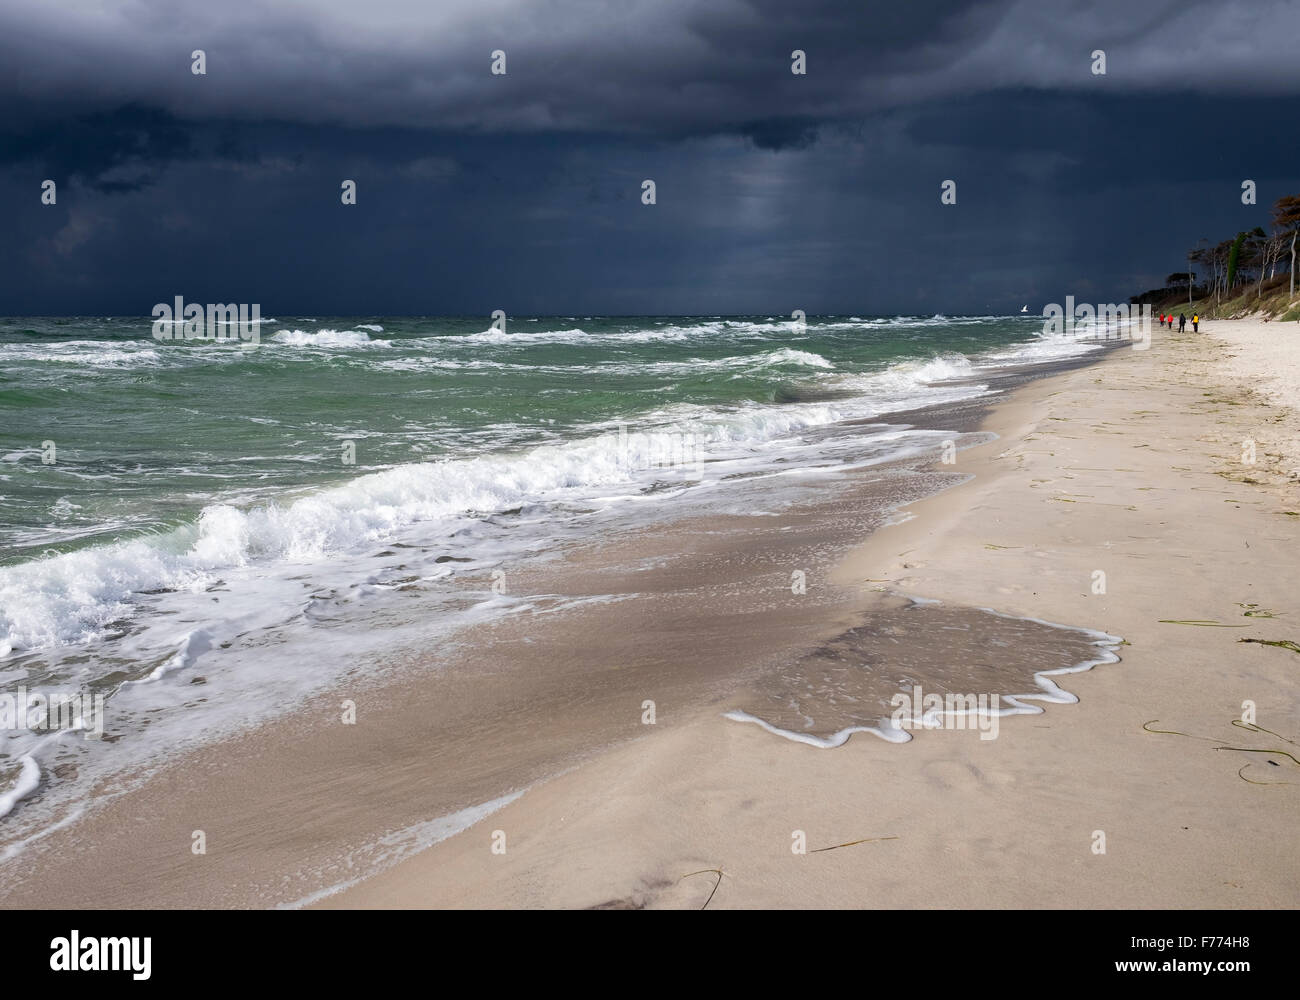 Oscura pioggia nuvole sulla spiaggia Weststrand, Mar Baltico, nato auf dem Darß, Fischland-Darß-Zingst, Western Pomerania Area Laguna Foto Stock